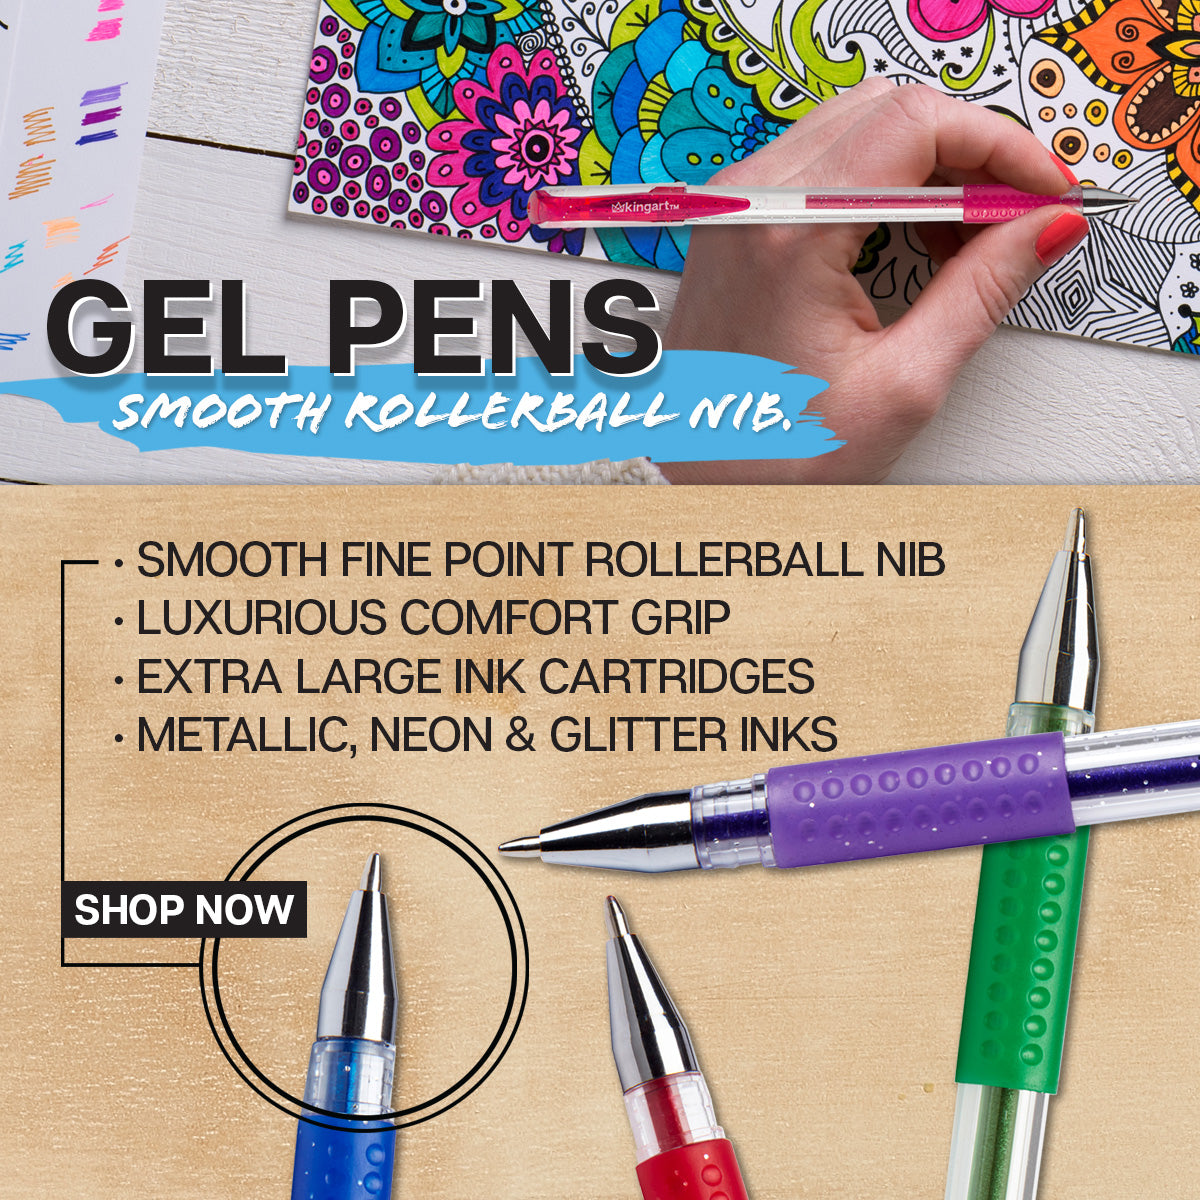 Gel Ink Pens, Colored Gel Pen 12 Color Set, Jelly Ink Pens 1.0Mm